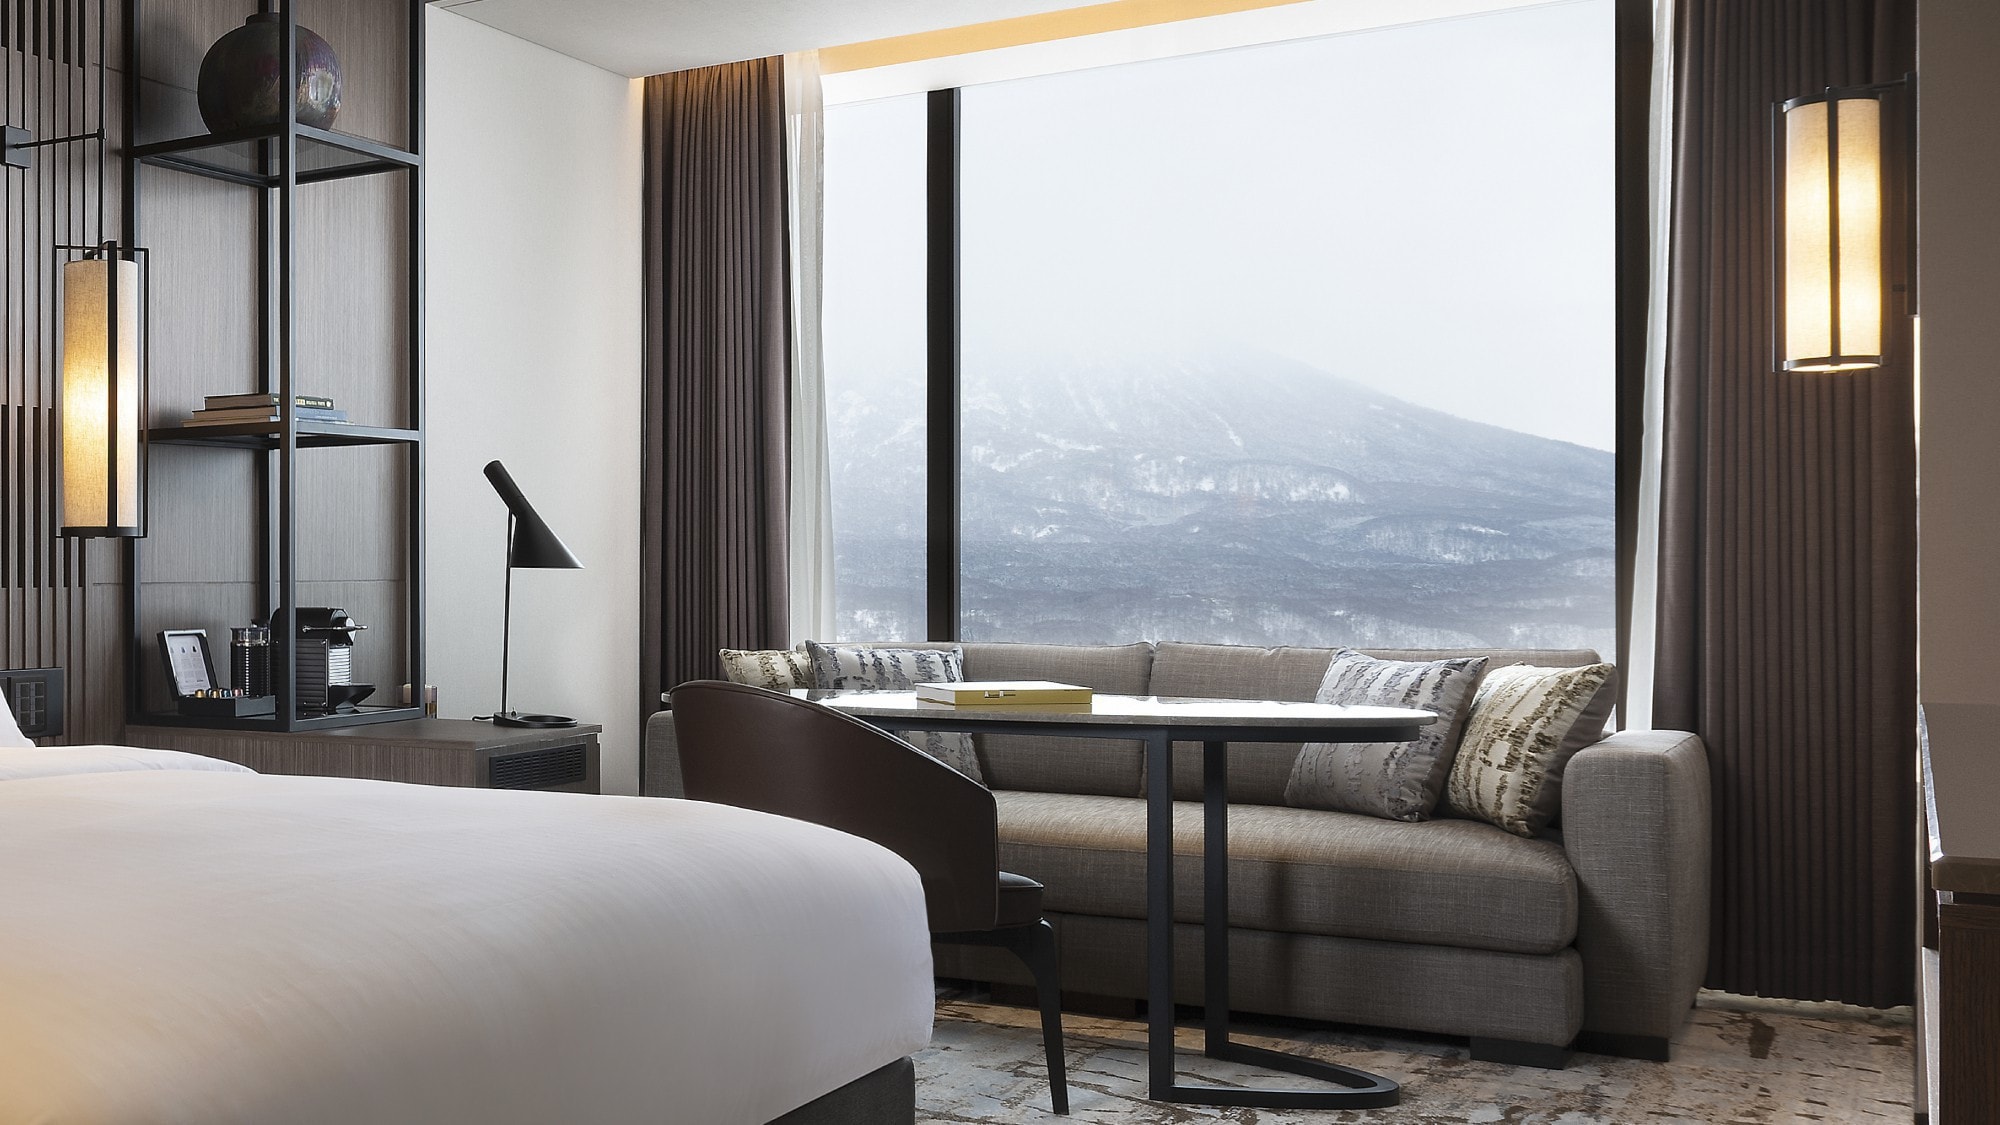 Terhubung langsung dengan Resor Ski Desa Niseko, sebuah hotel resor yang dikelilingi oleh keindahan alam Gunung Yotei dan Niseko Annupuri